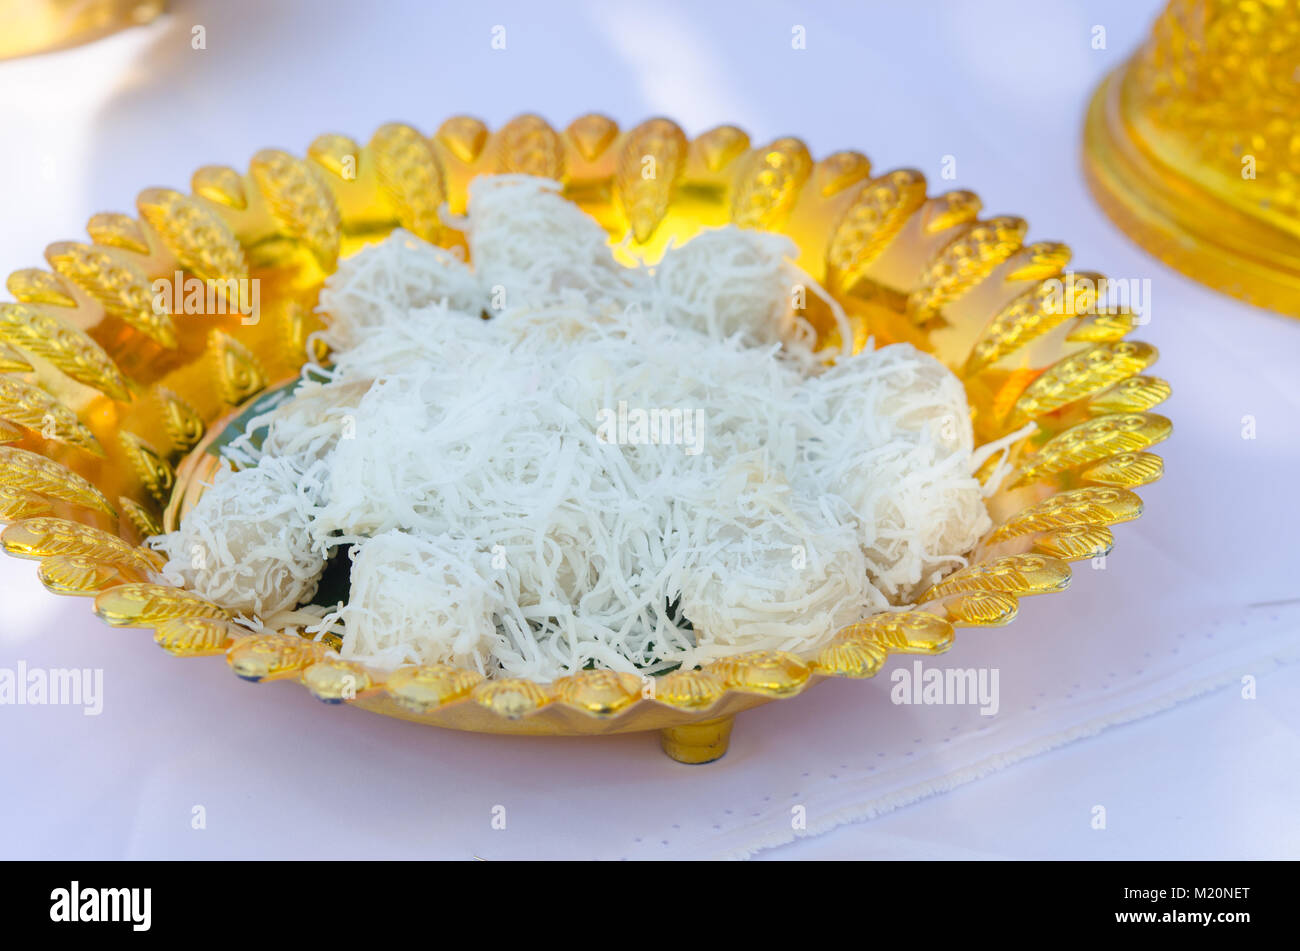 Thailändisches Dessert auf den Tisch. Dessert für farbenfrohe Zeremonie die thailändische Kultur. Stockfoto